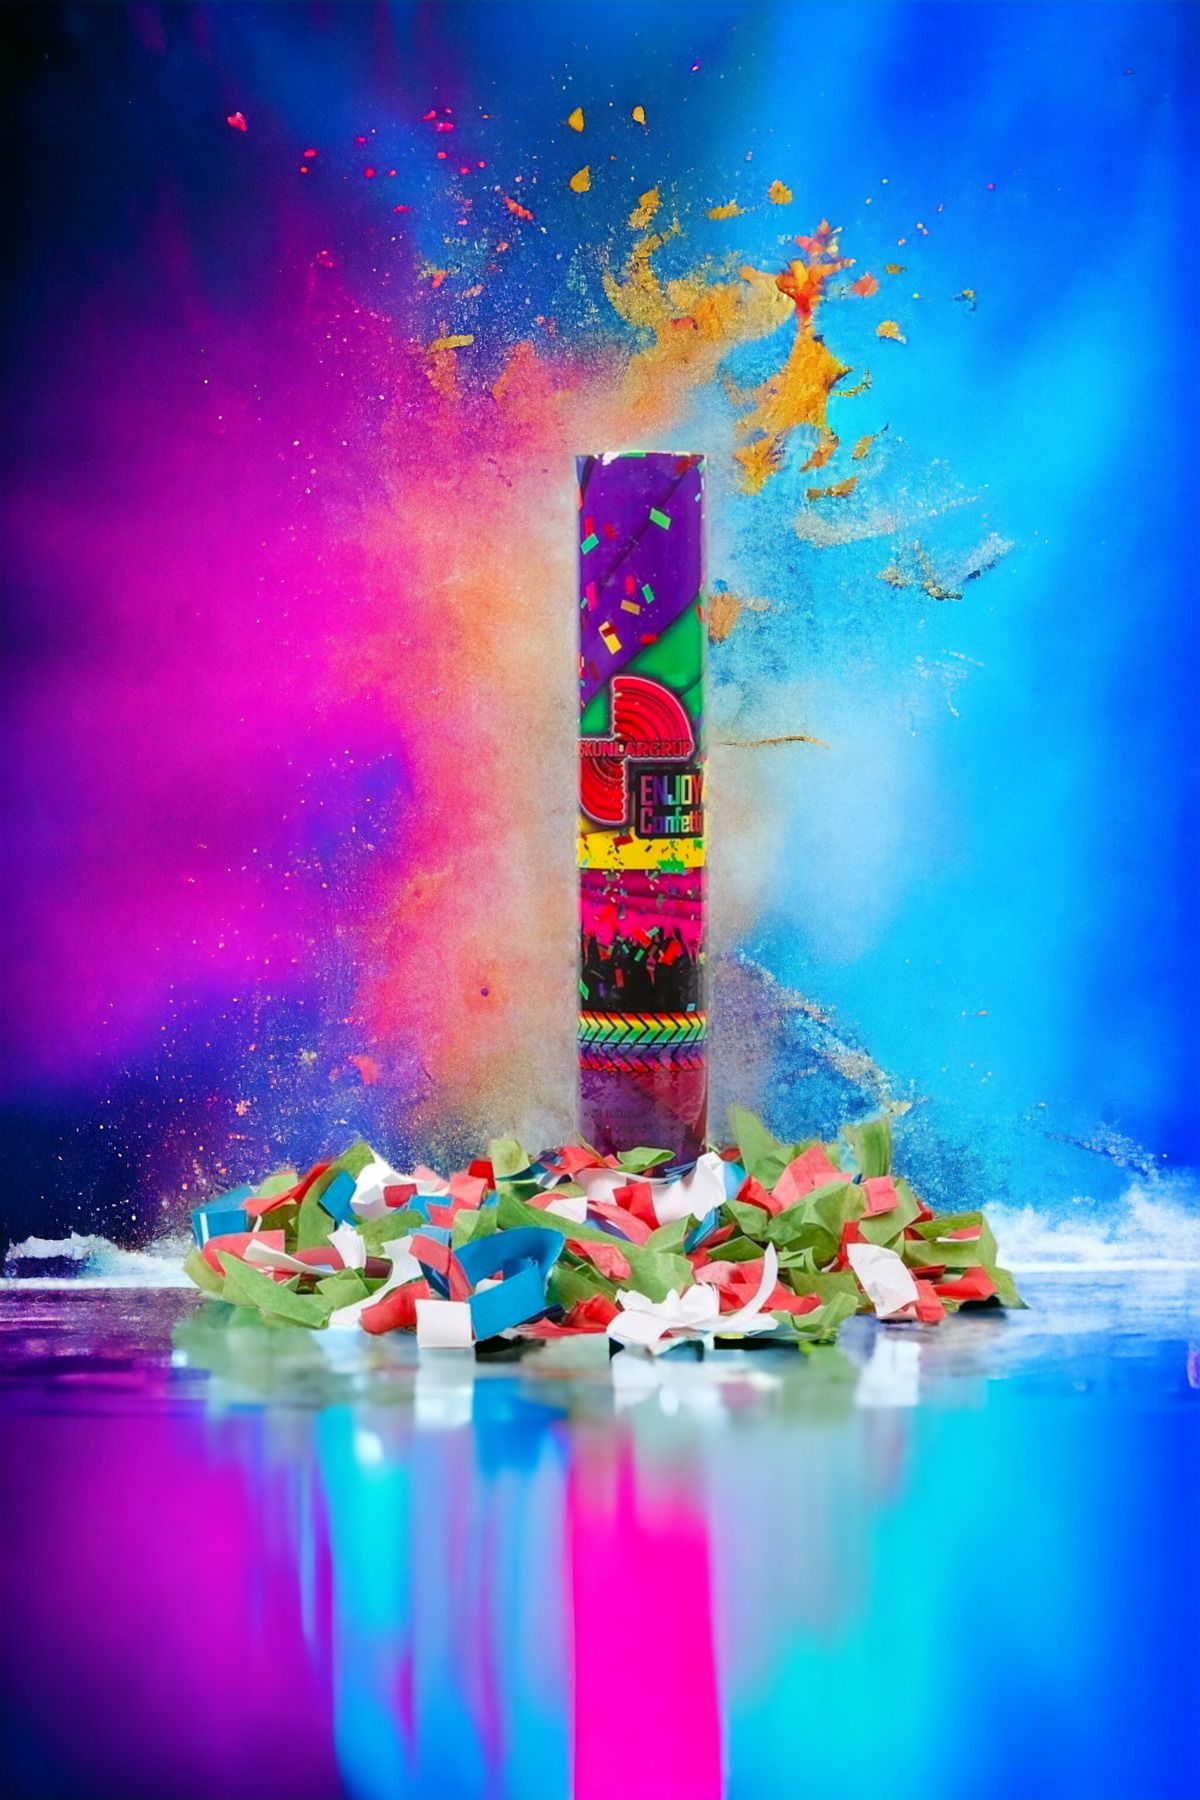 Enjoy 30 cm uzunluğunda karışık süs ve şerit fırlatan karışık renk konfeti süsleme ürünleri carnaval